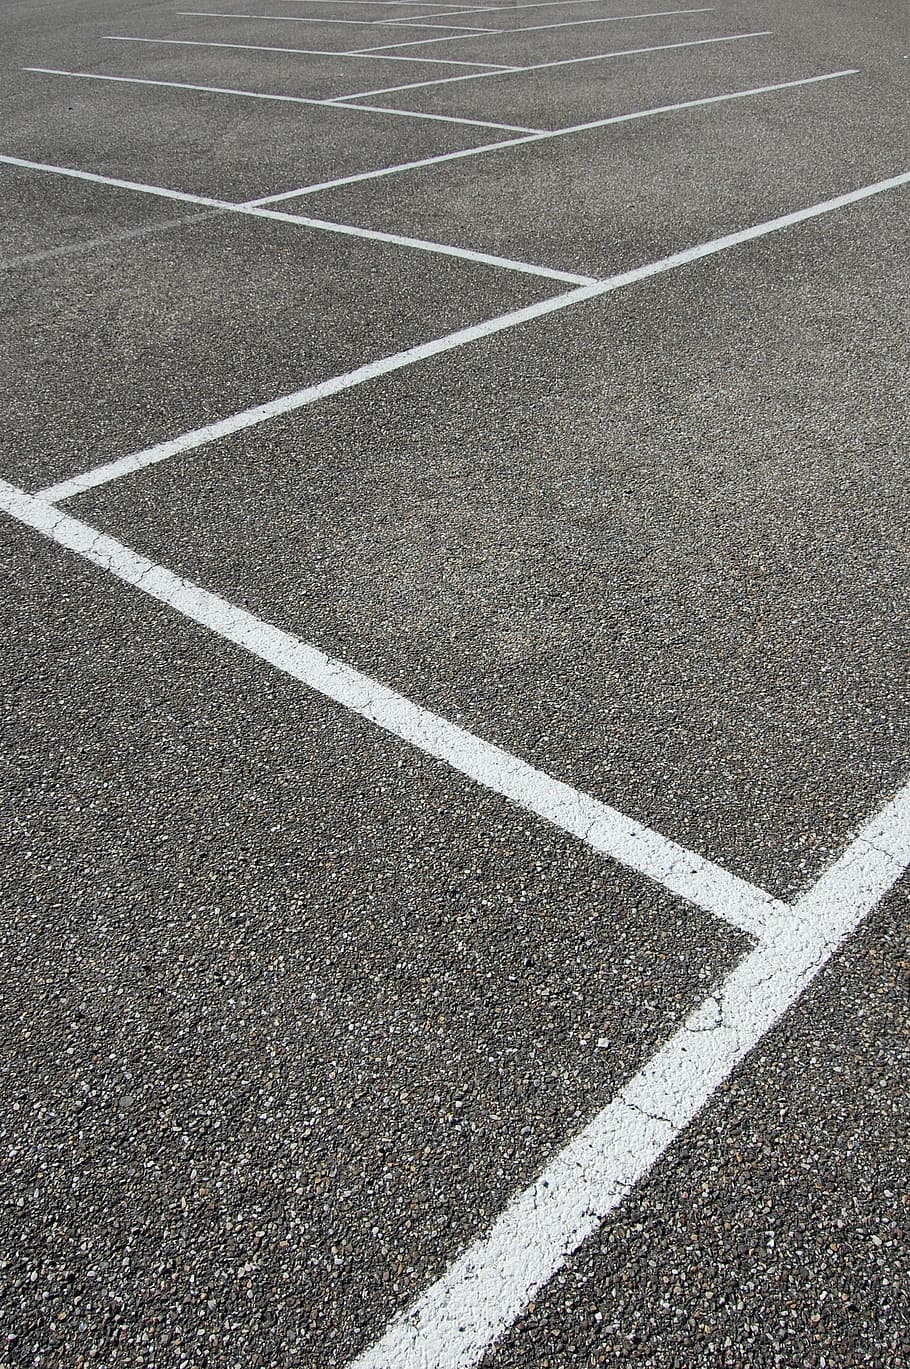 white line painted on asphalt floor, mark, road, road markings, HD wallpaper